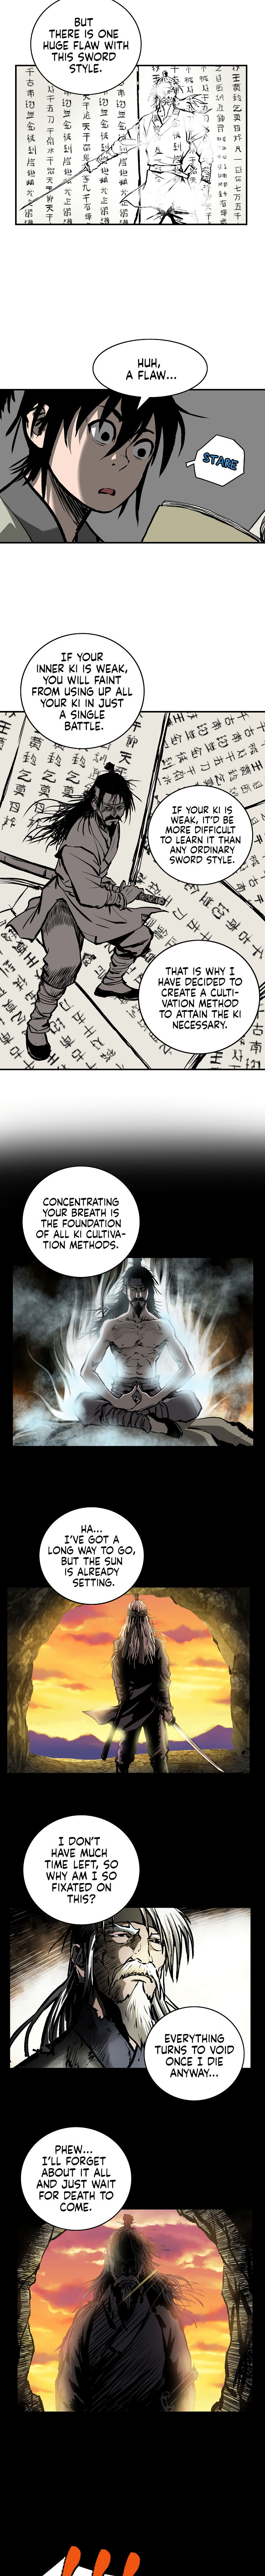 Bowblade Spirit - Chapter 9 Page 5